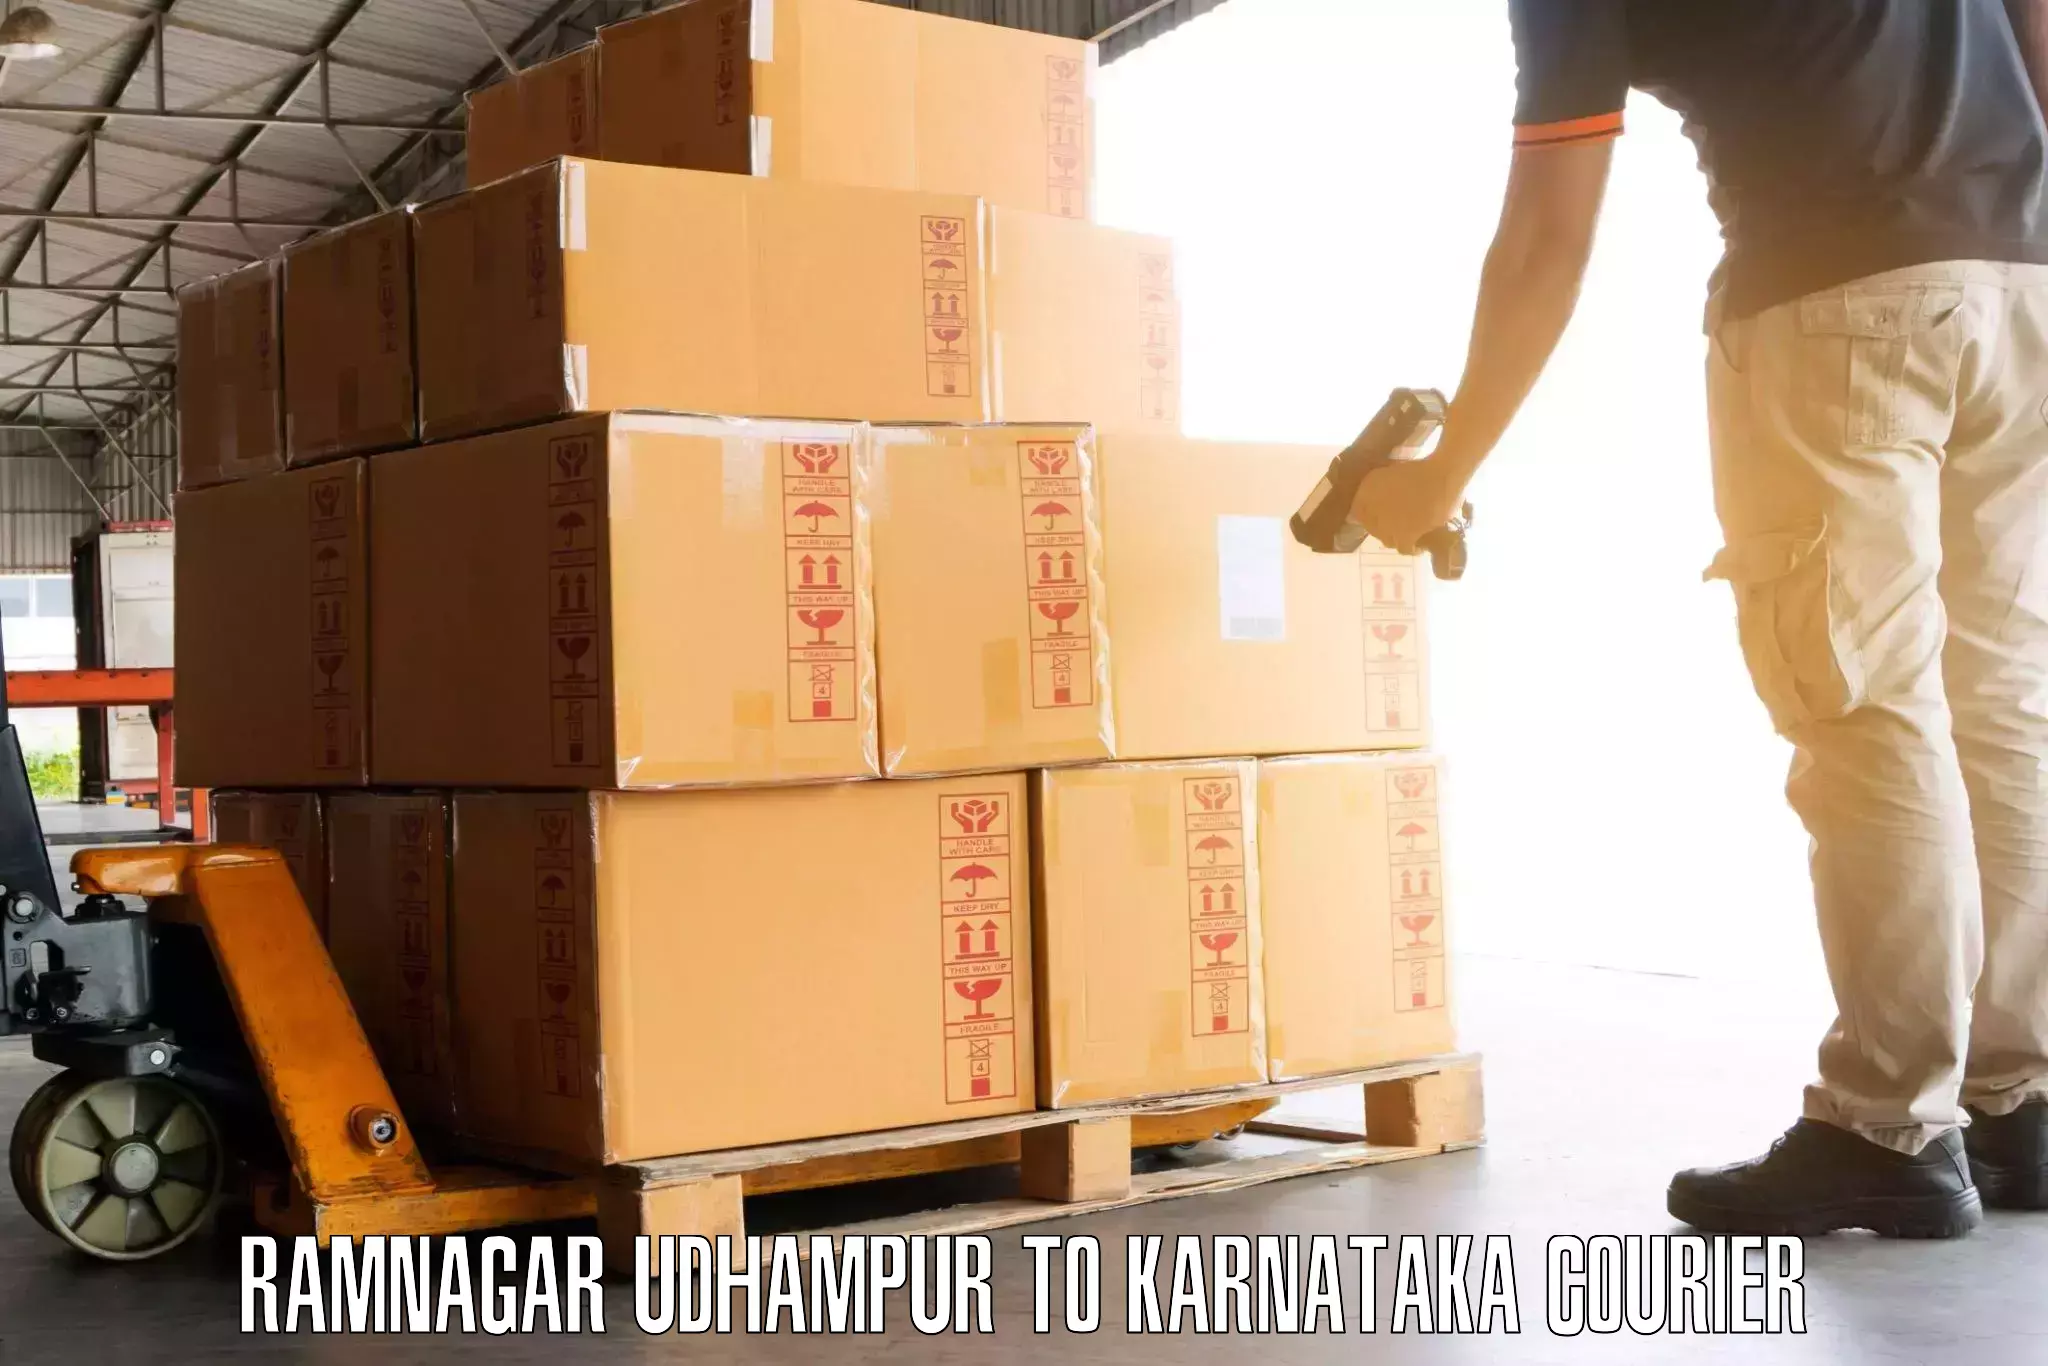 Budget-friendly baggage courier Ramnagar Udhampur to Channagiri